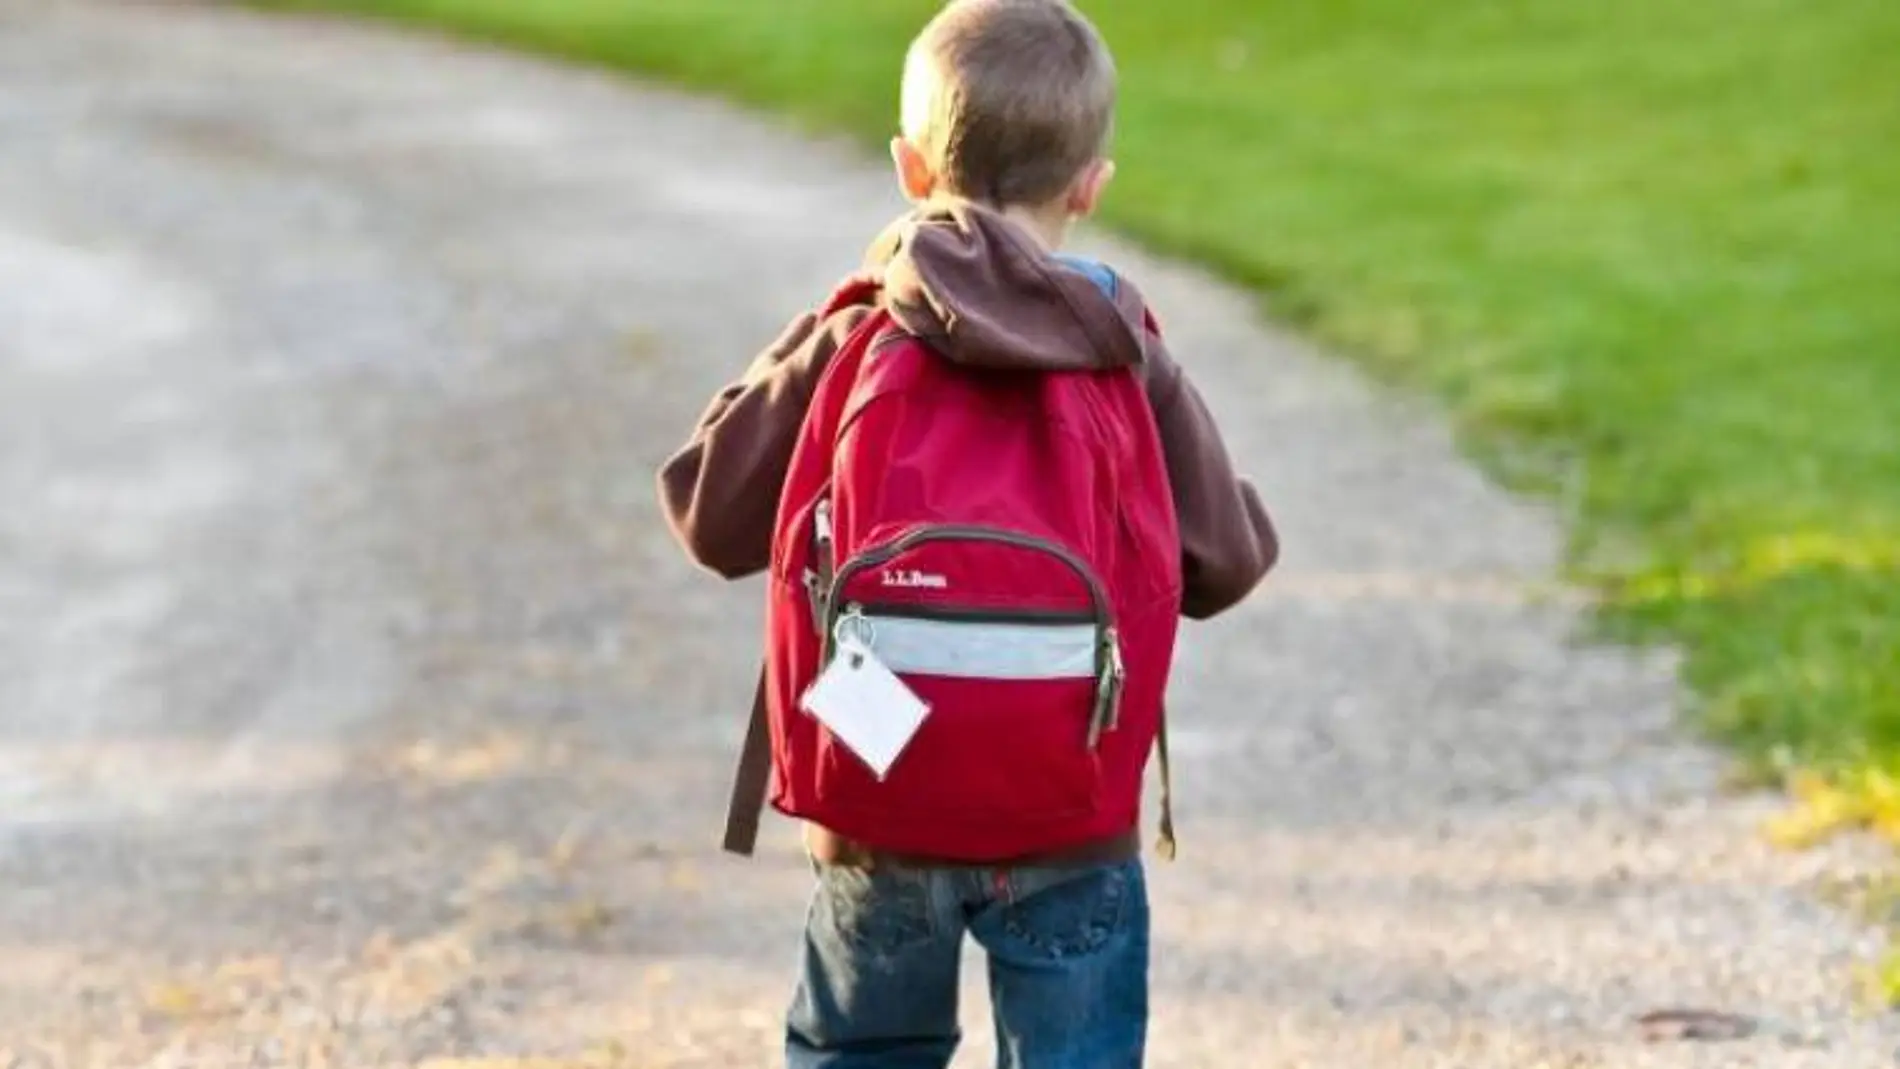 El 80,4% de los niños en edad escolar excede el peso recomendado de sus mochilas